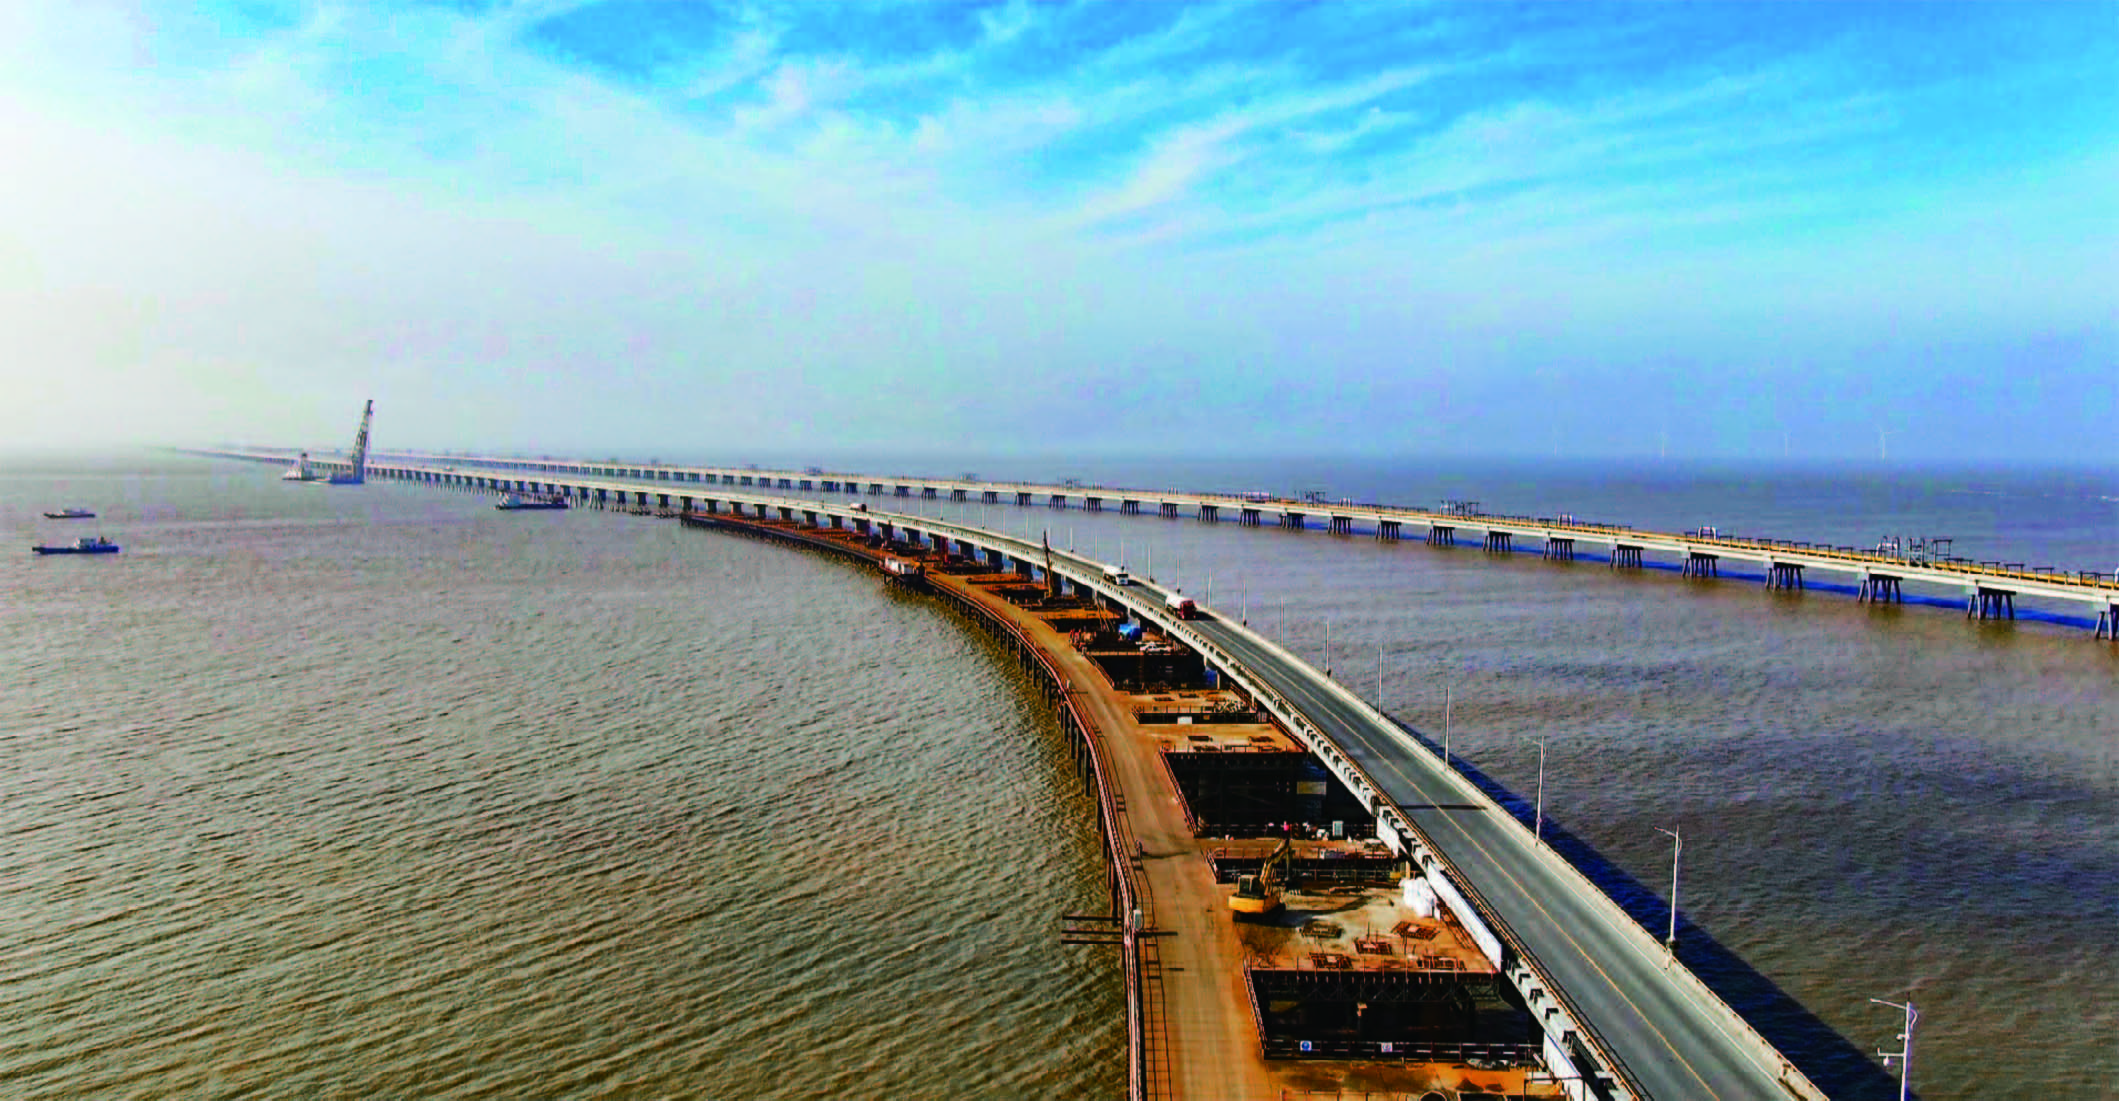 黄海大桥,是洋口港的重大基础设施工程